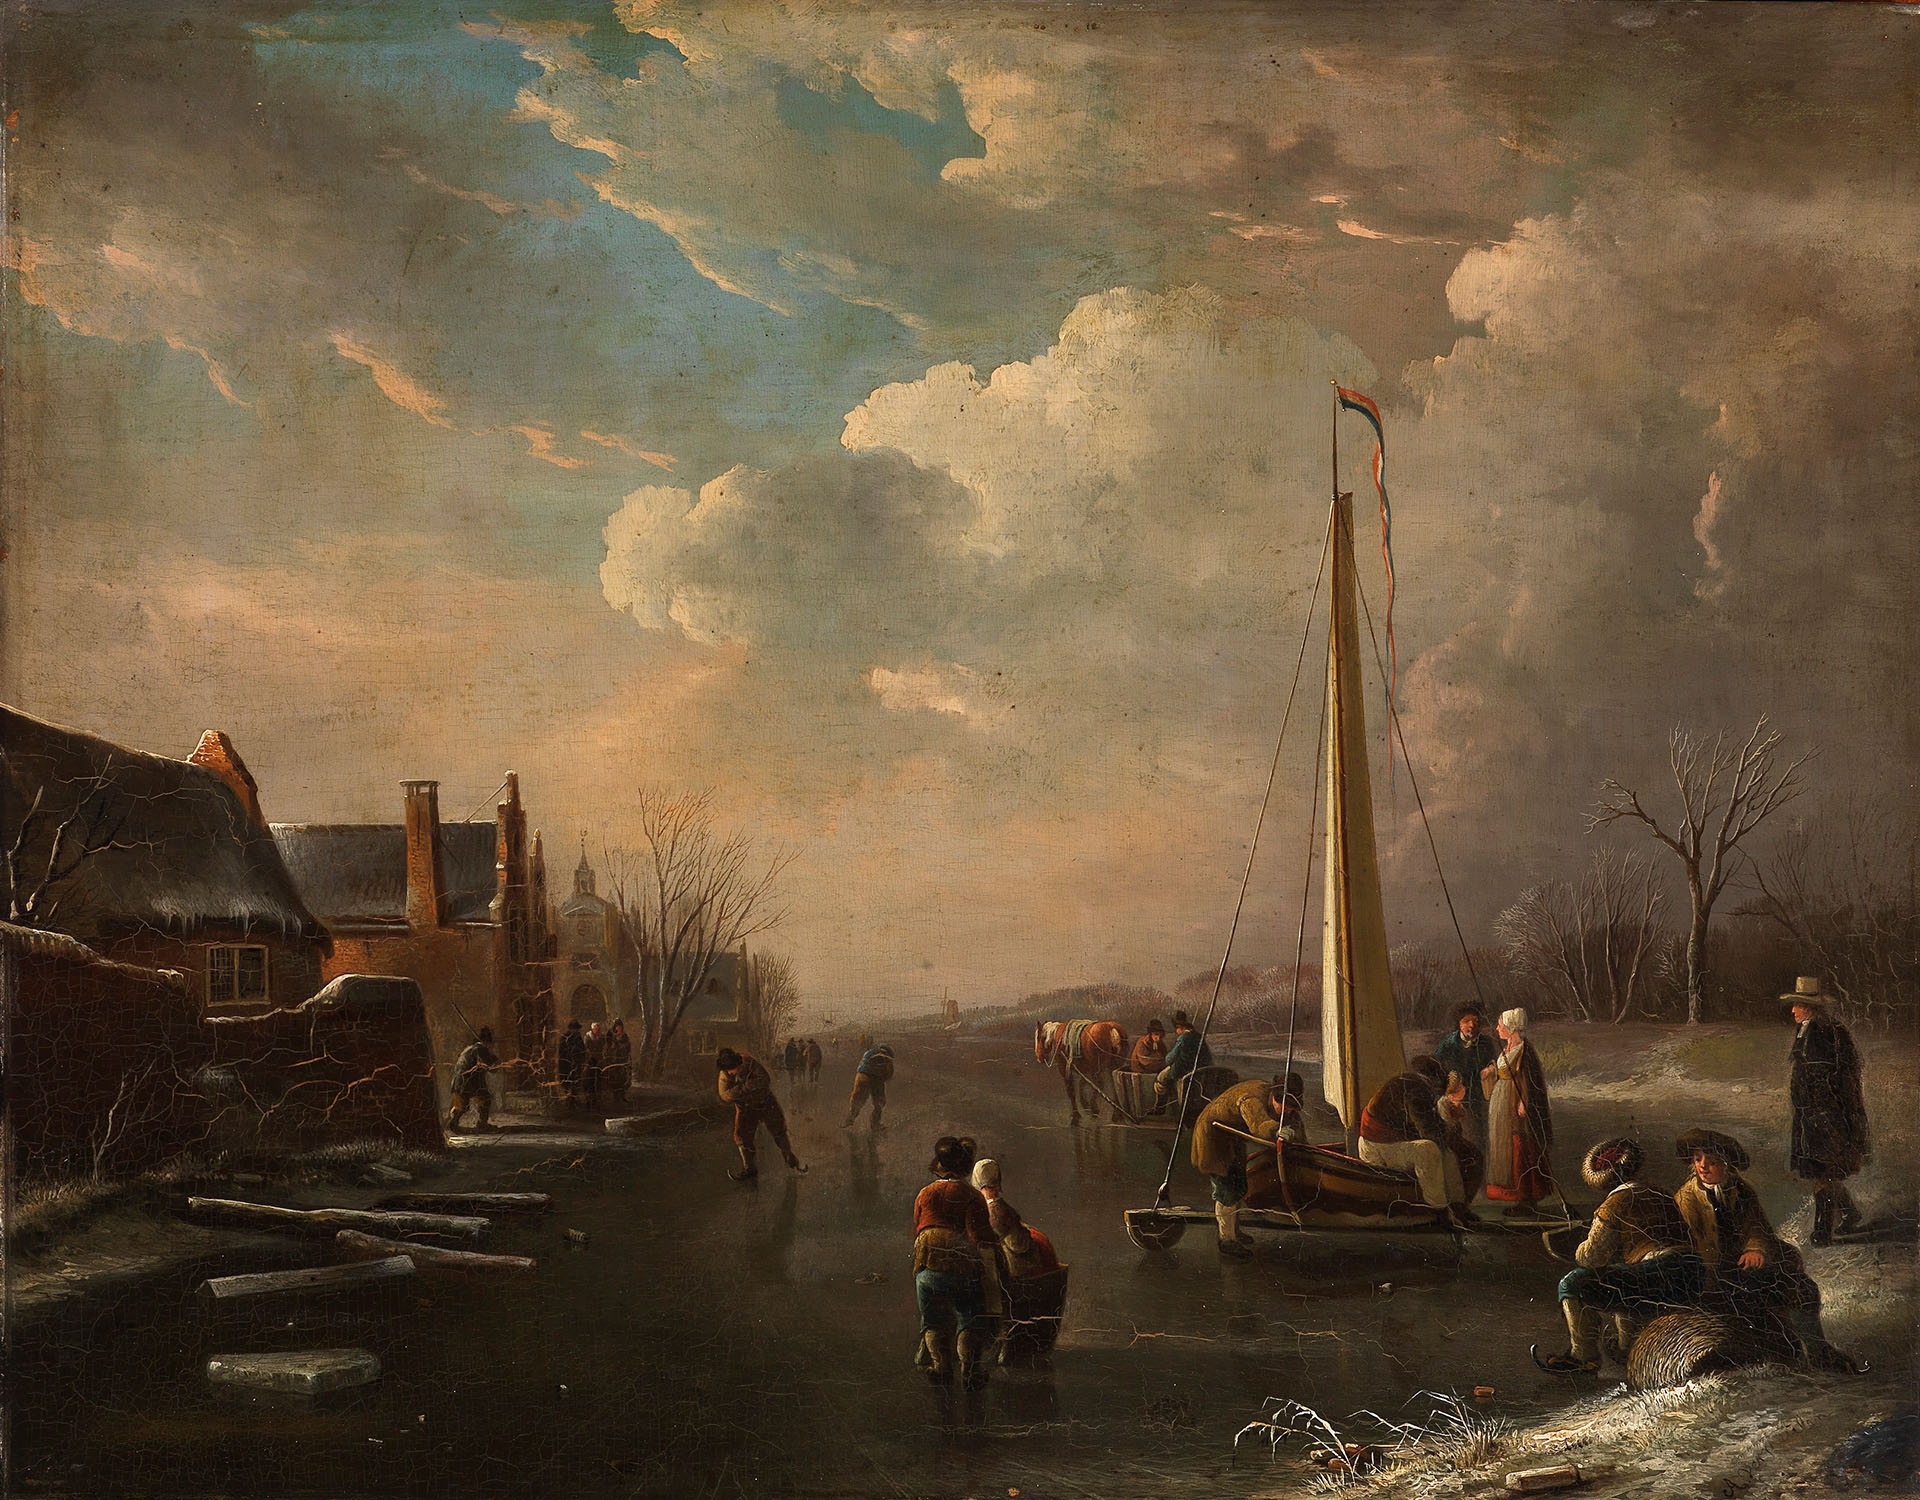 Gemälde, dass einen Blick auf einen zugefrorenen See zeigt, auf dem Menschen eislaufen